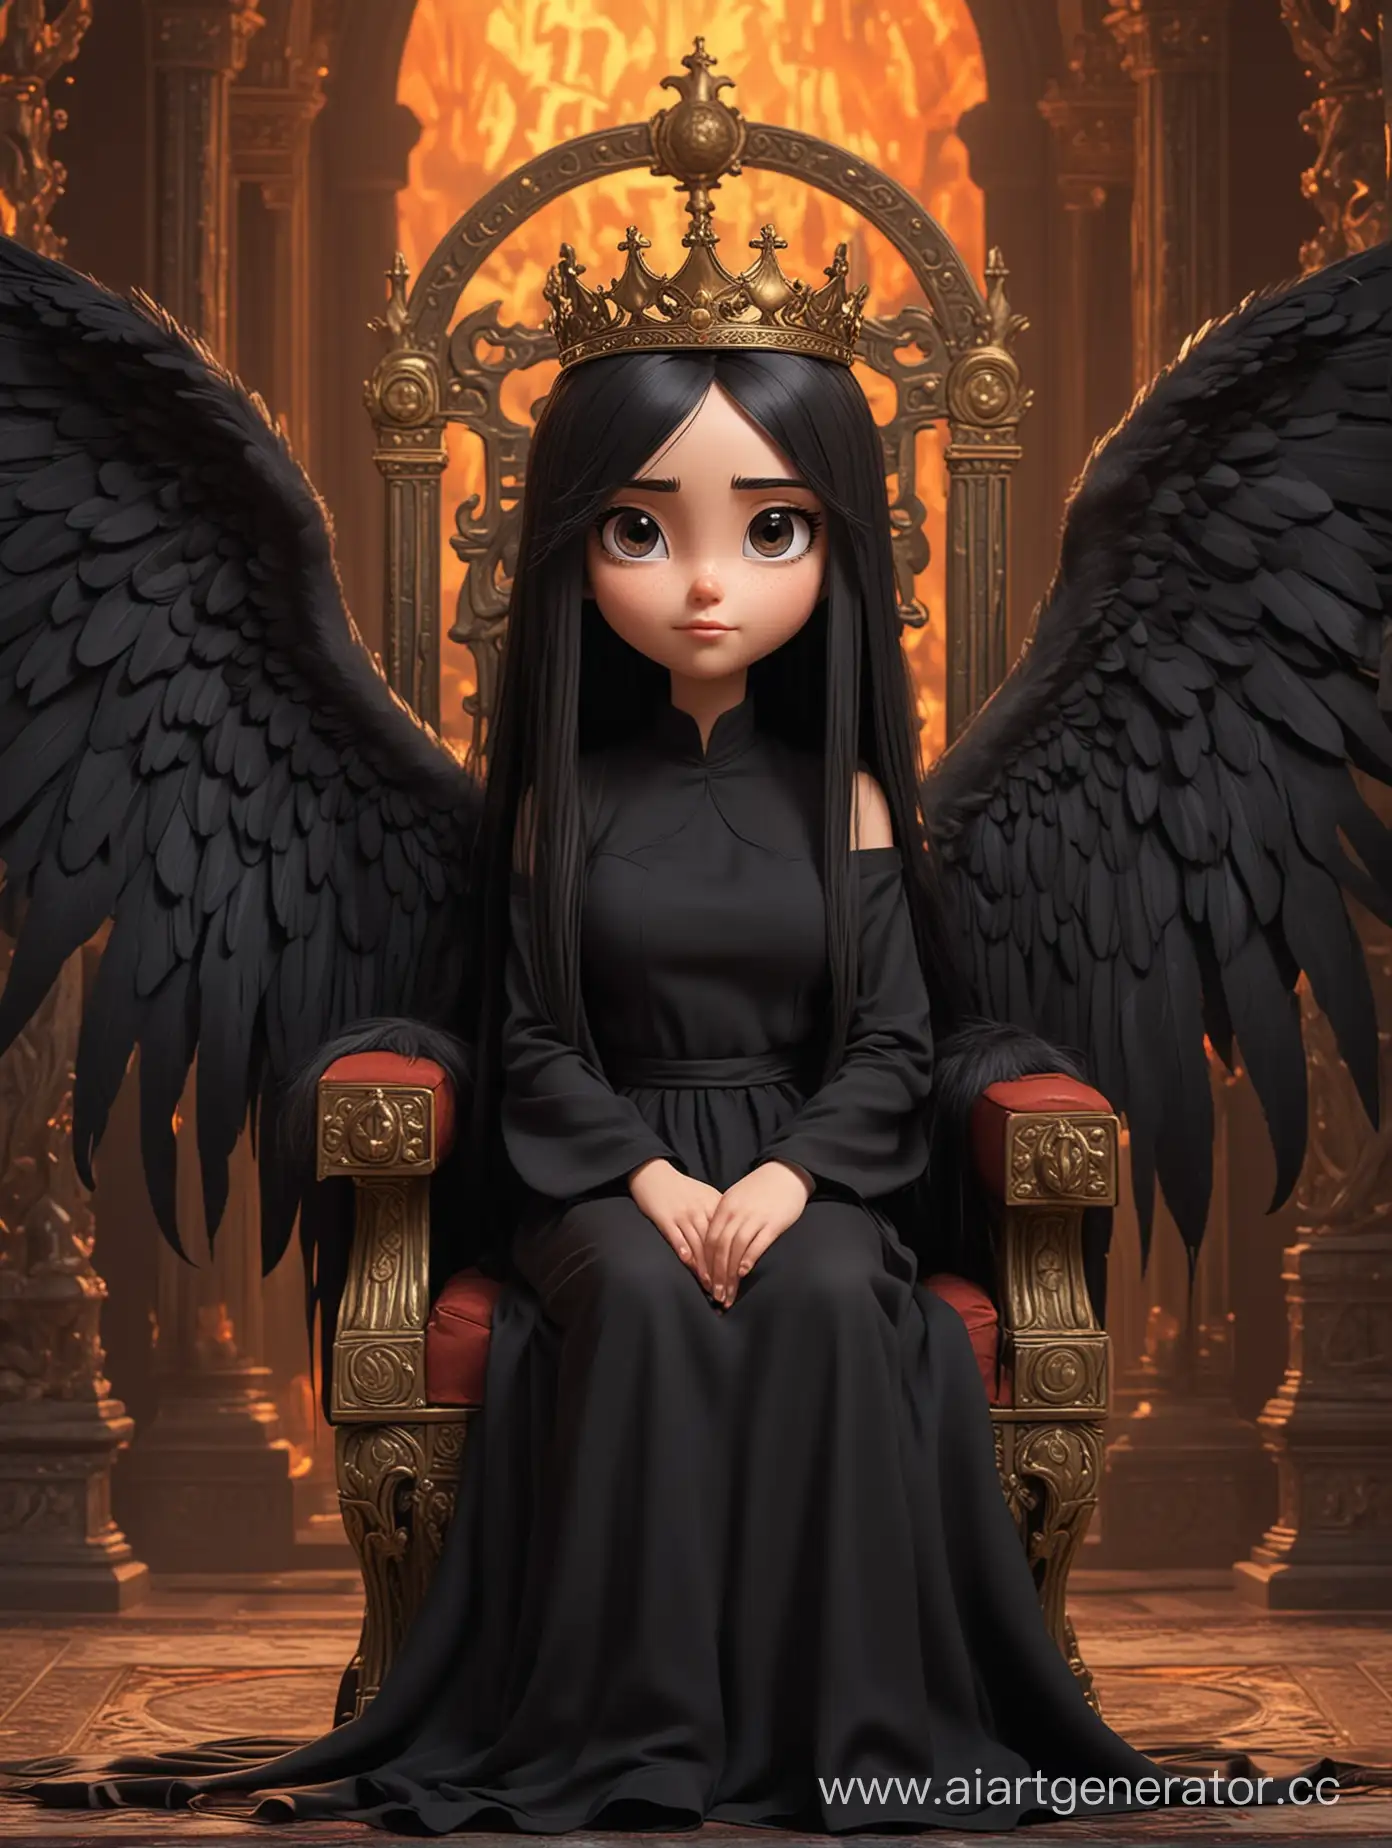 Девушка из мультика,одетая во всё черное,с длинными прямыми волосами,имеющая крылья,сидит на троне,а на фоне был ад